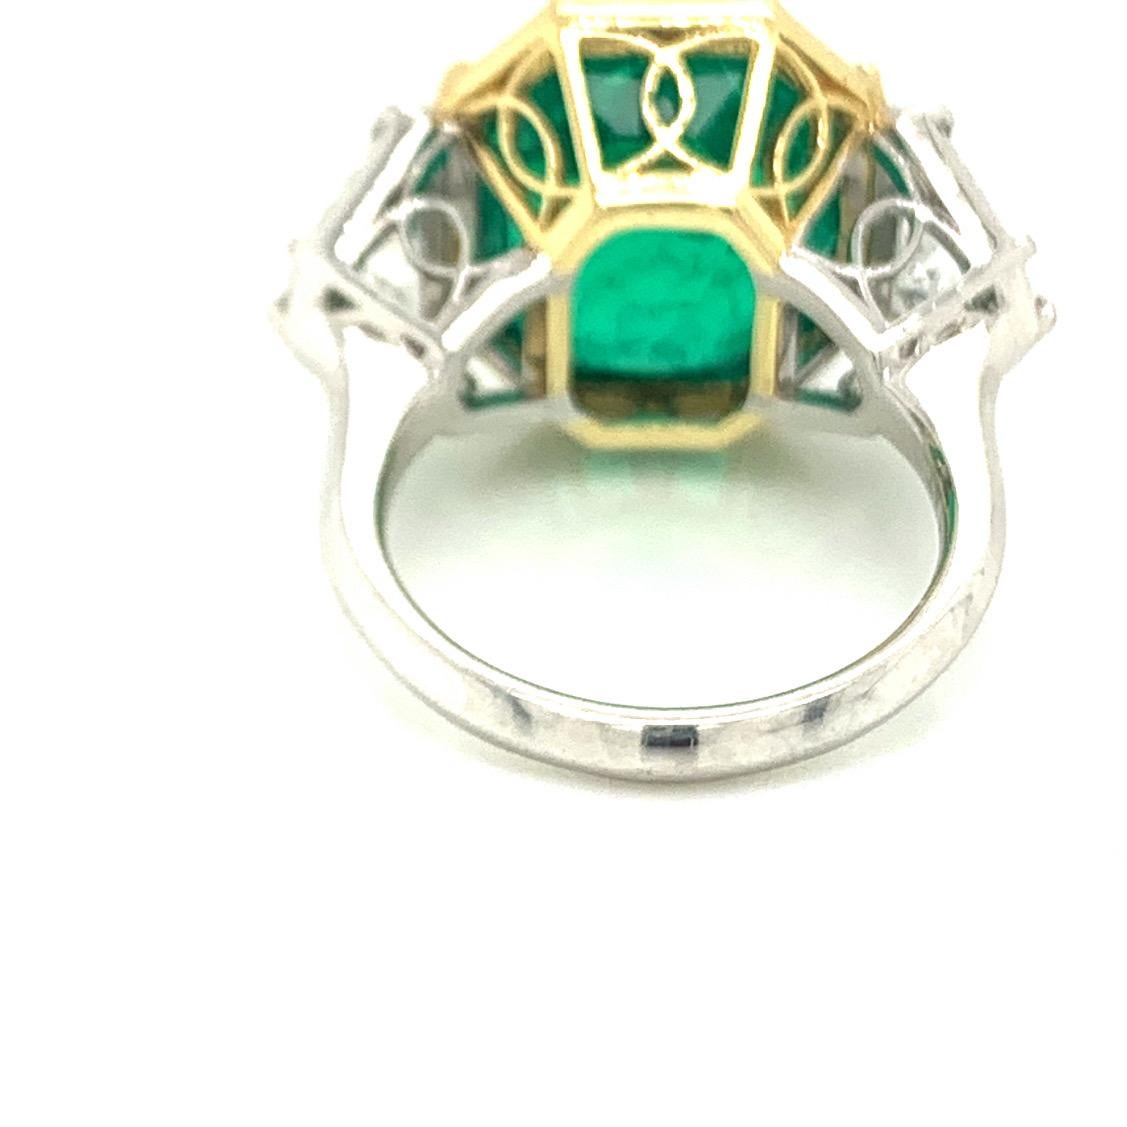 10 carat emerald